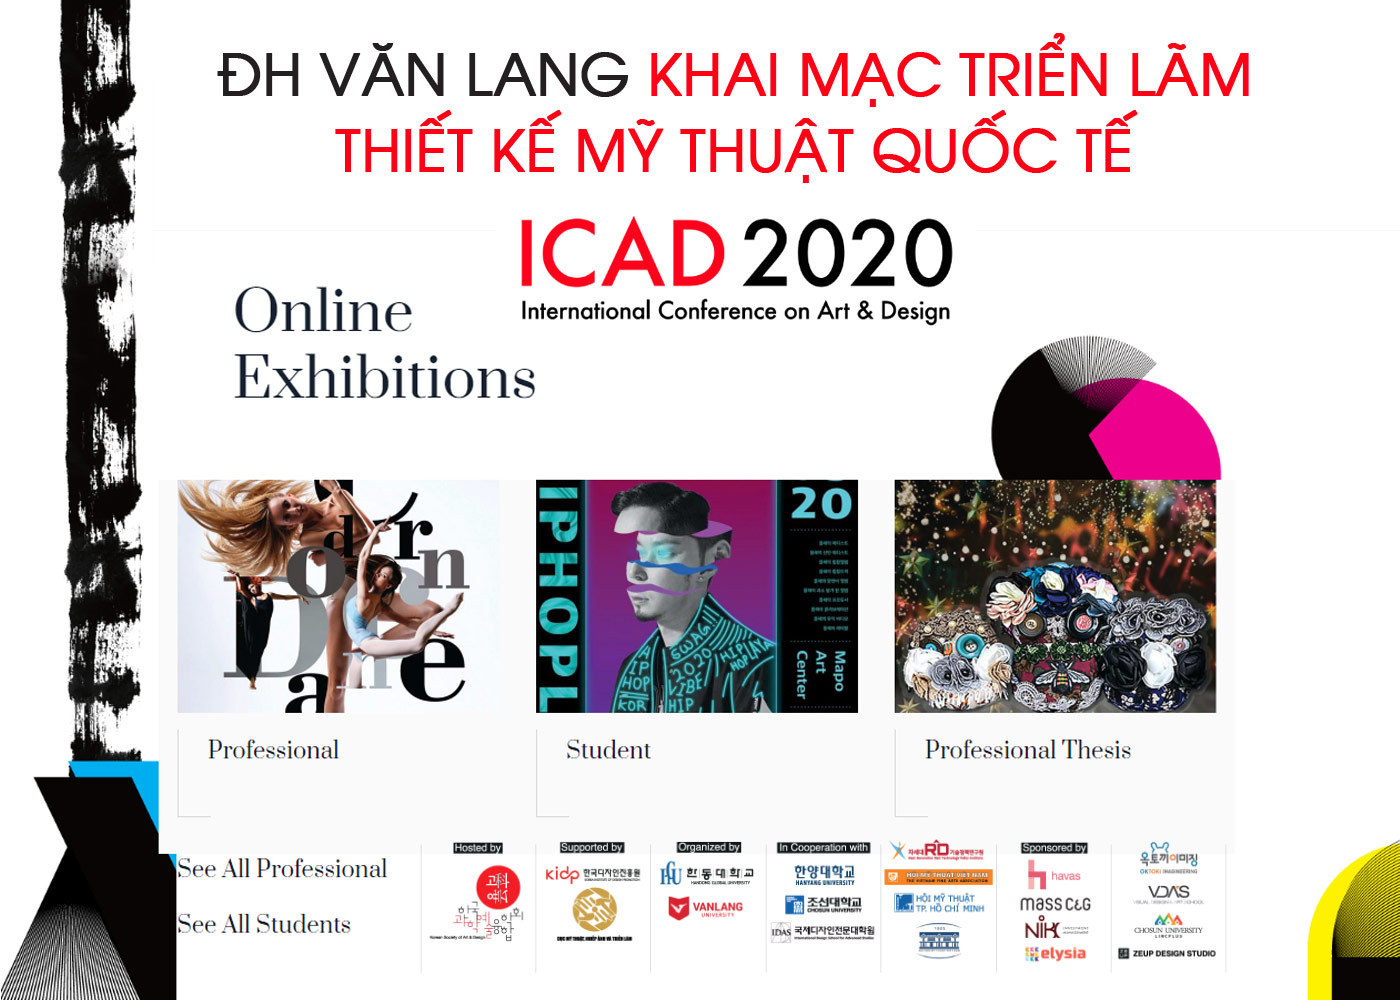 ĐH Văn Lang khai mạc Triển lãm thiết kế mỹ thuật quốc tế ICAD 2020 - Ảnh 1